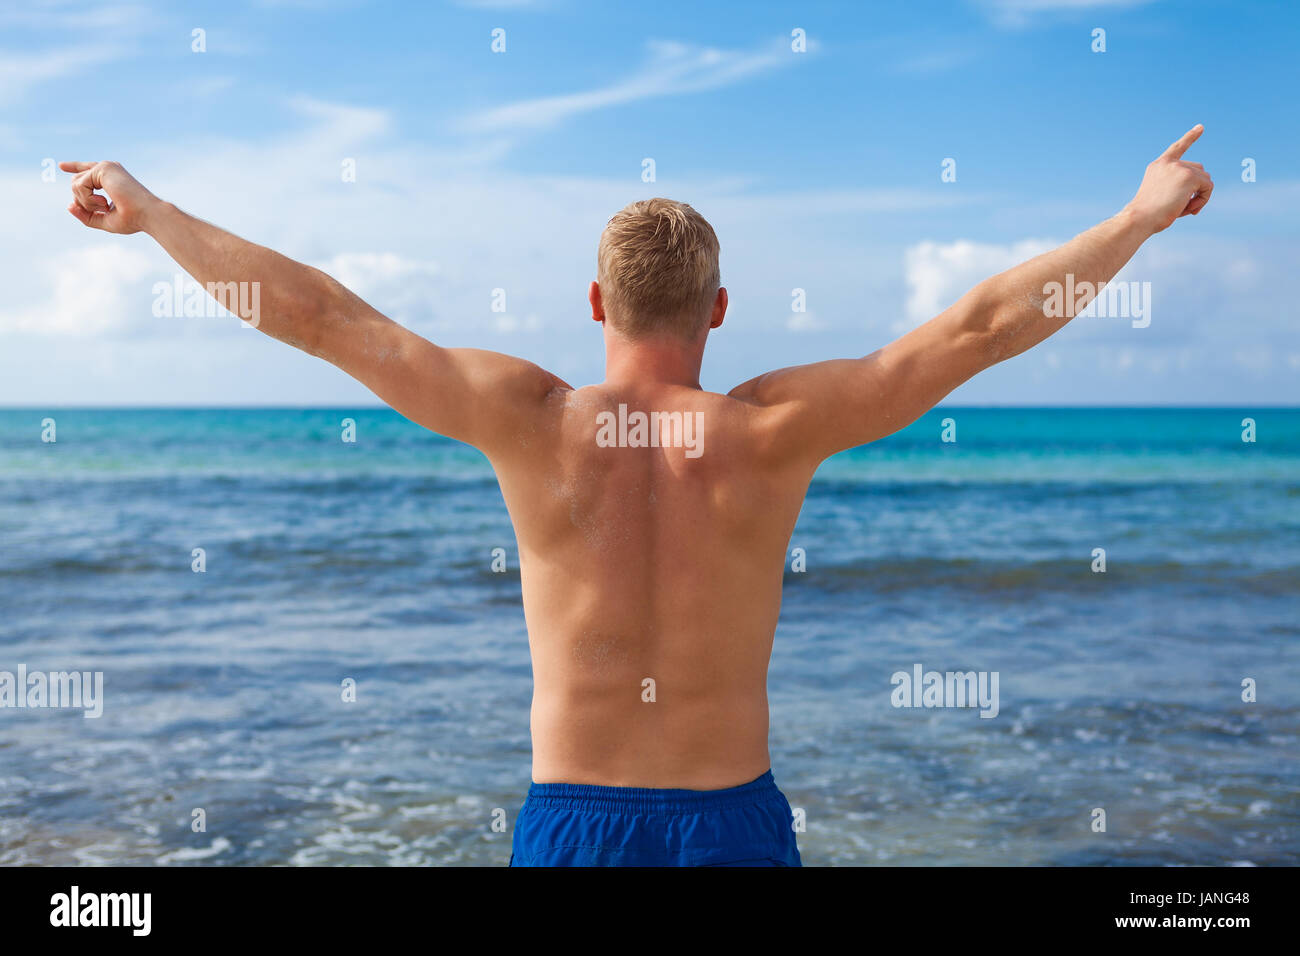 Sportlicher junger mann nel badehose am Strand Urlaub im sommer freizeit lifestyle Foto Stock